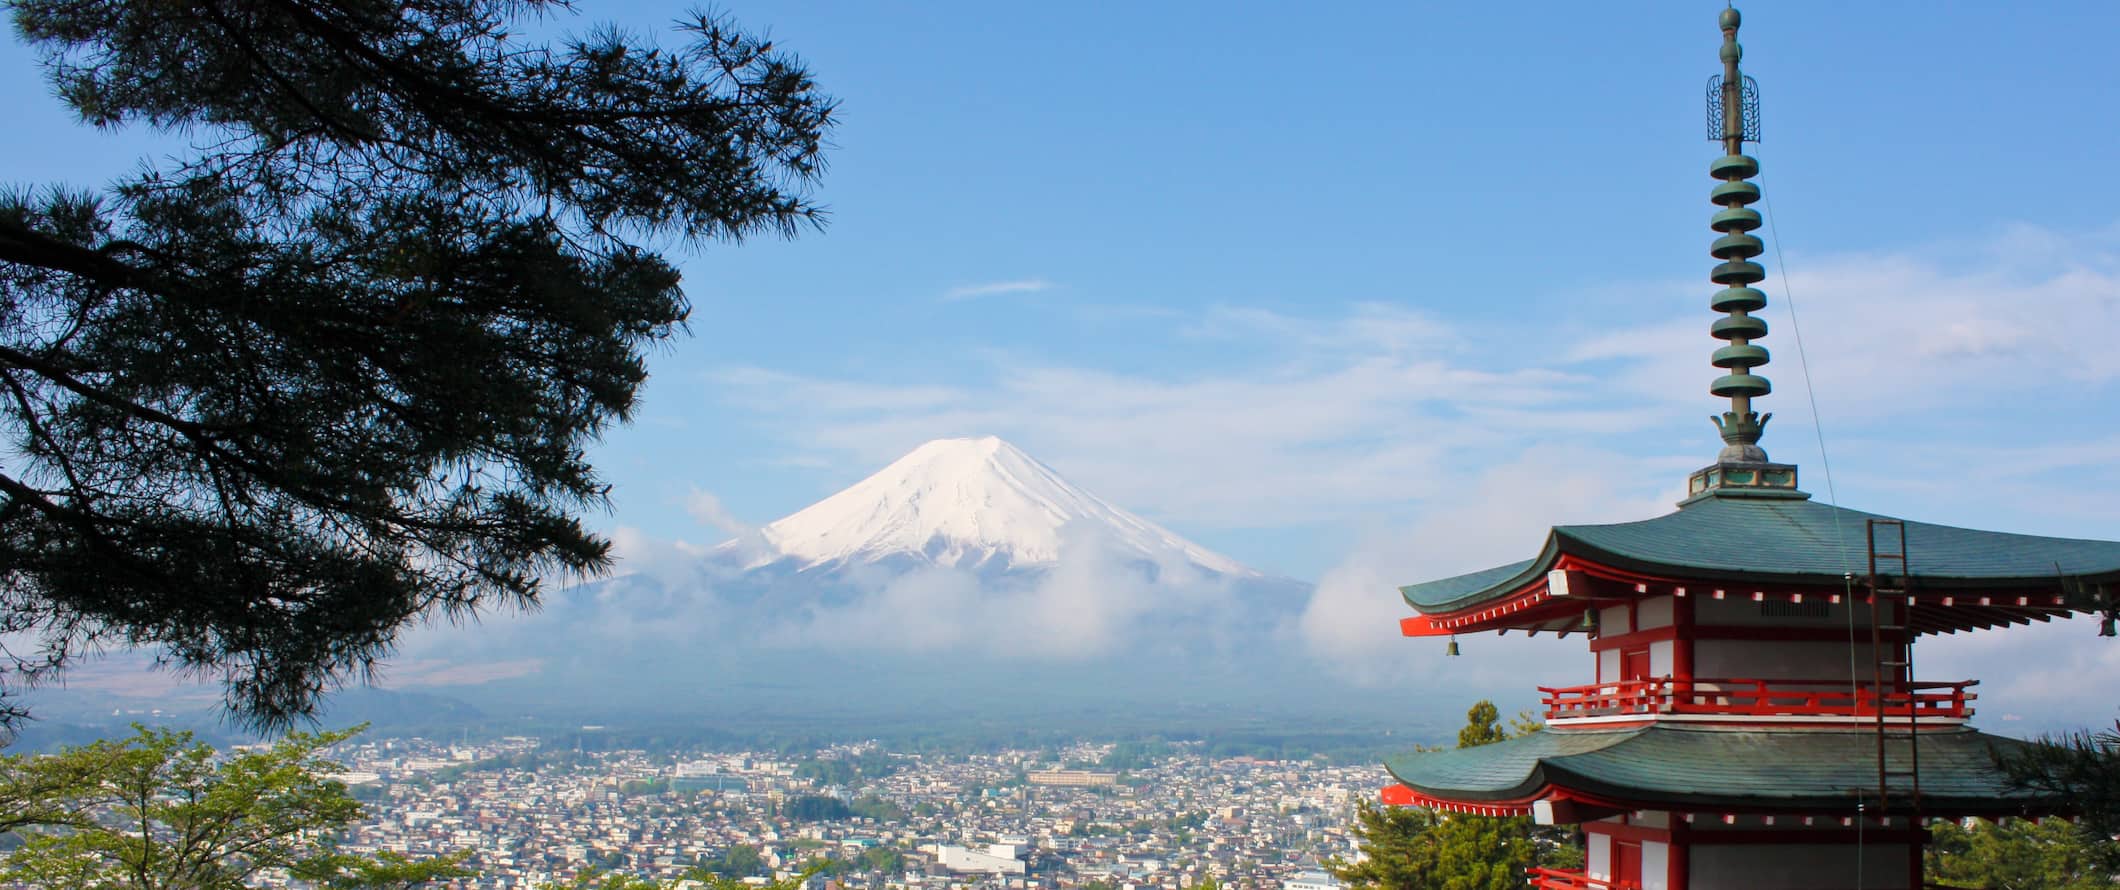 Monte Fuji à distância em um dia ensolarado com um pagode em primeiro plano no Japão